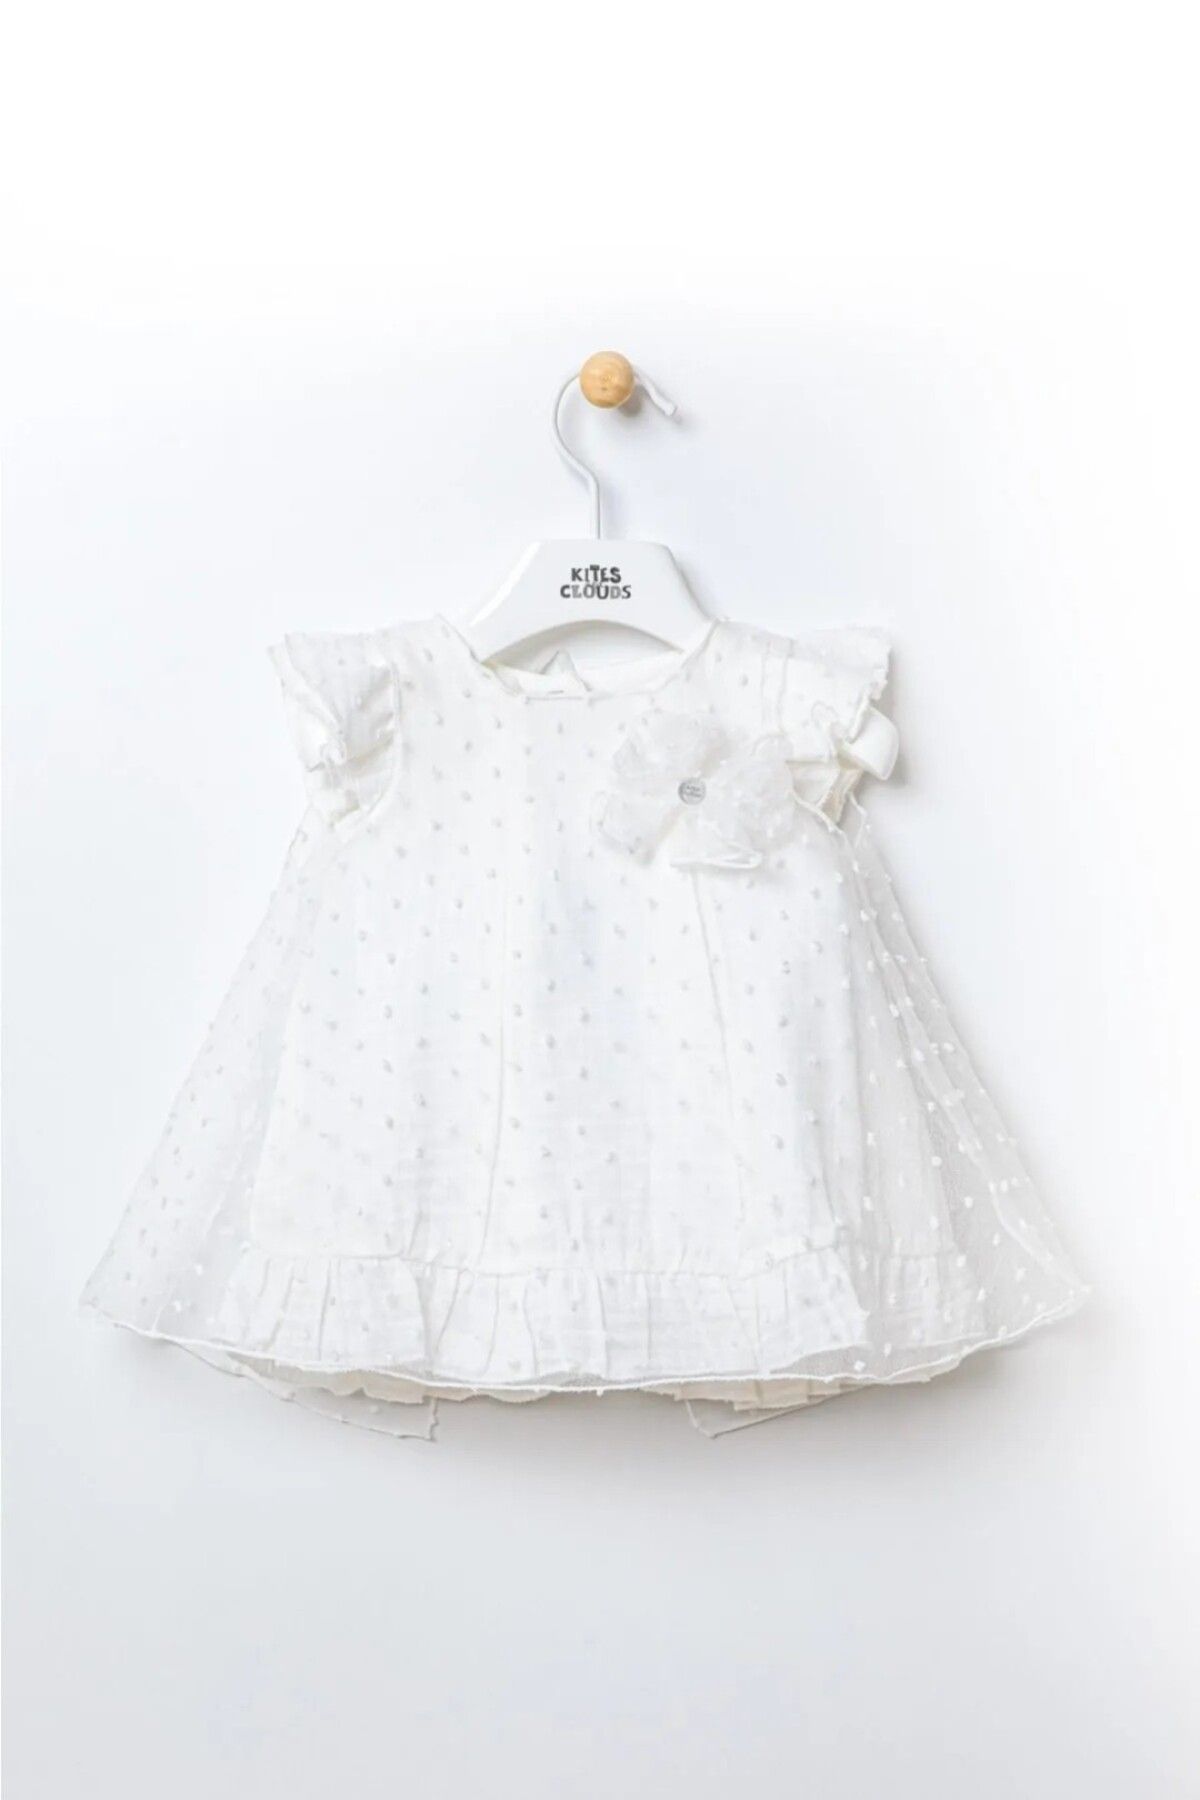 morwind Beyaz Kız Bebek Elbise Fiyonklu Fırfırlı Tüllü Kız Doğum Günü Elbisesi